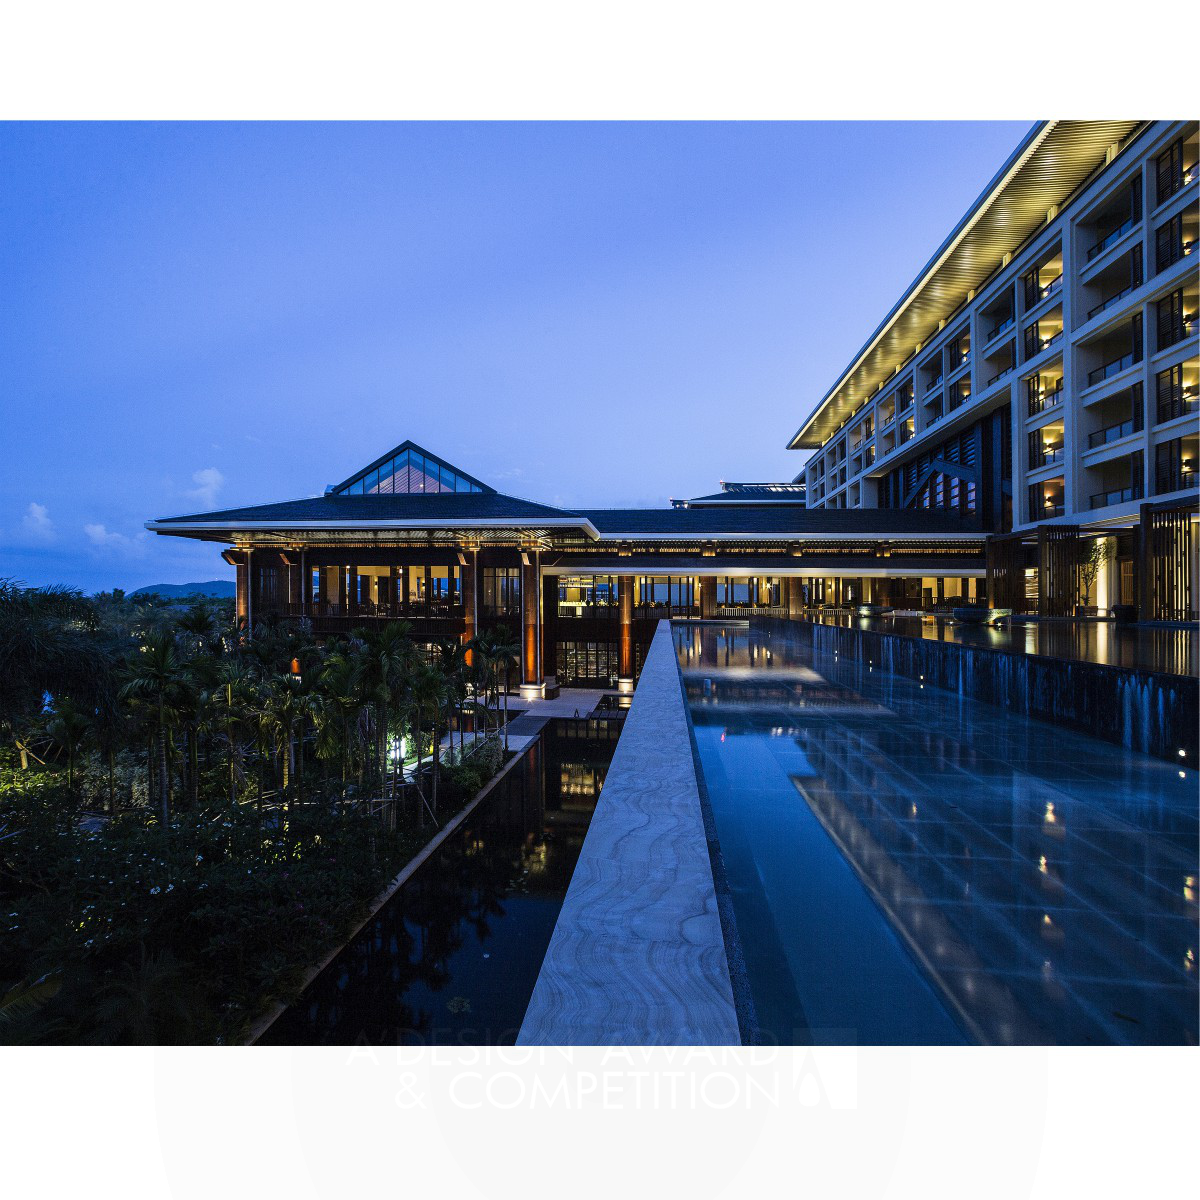 Haitang Bay No.9 Sanya Resort Hotel by Yang Bangsheng